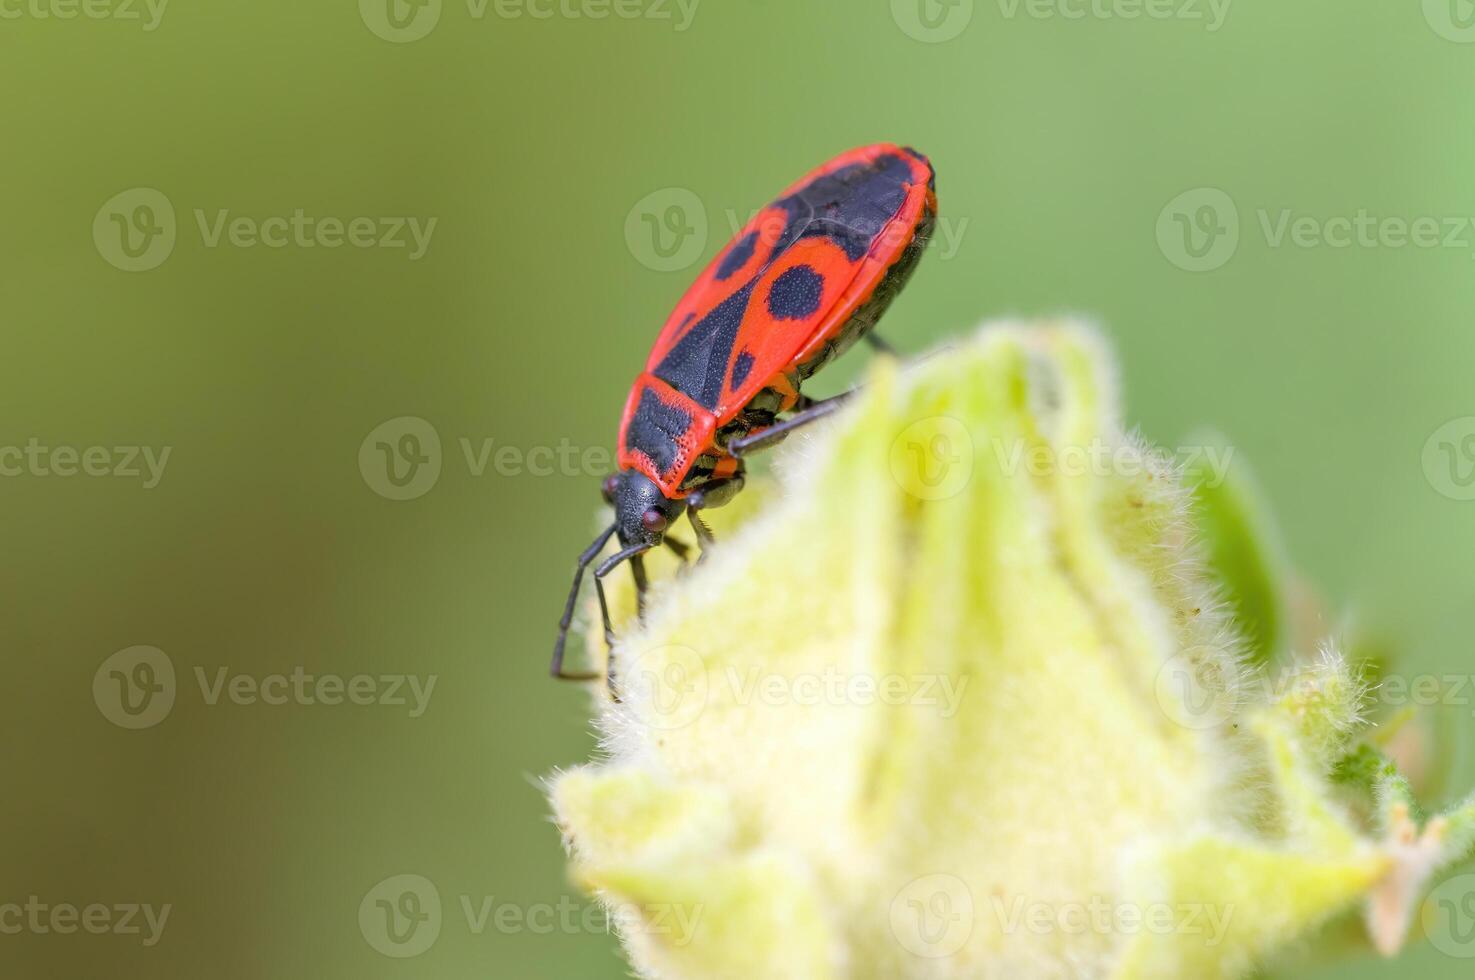 en små skalbagge insekt på en växt i de äng foto